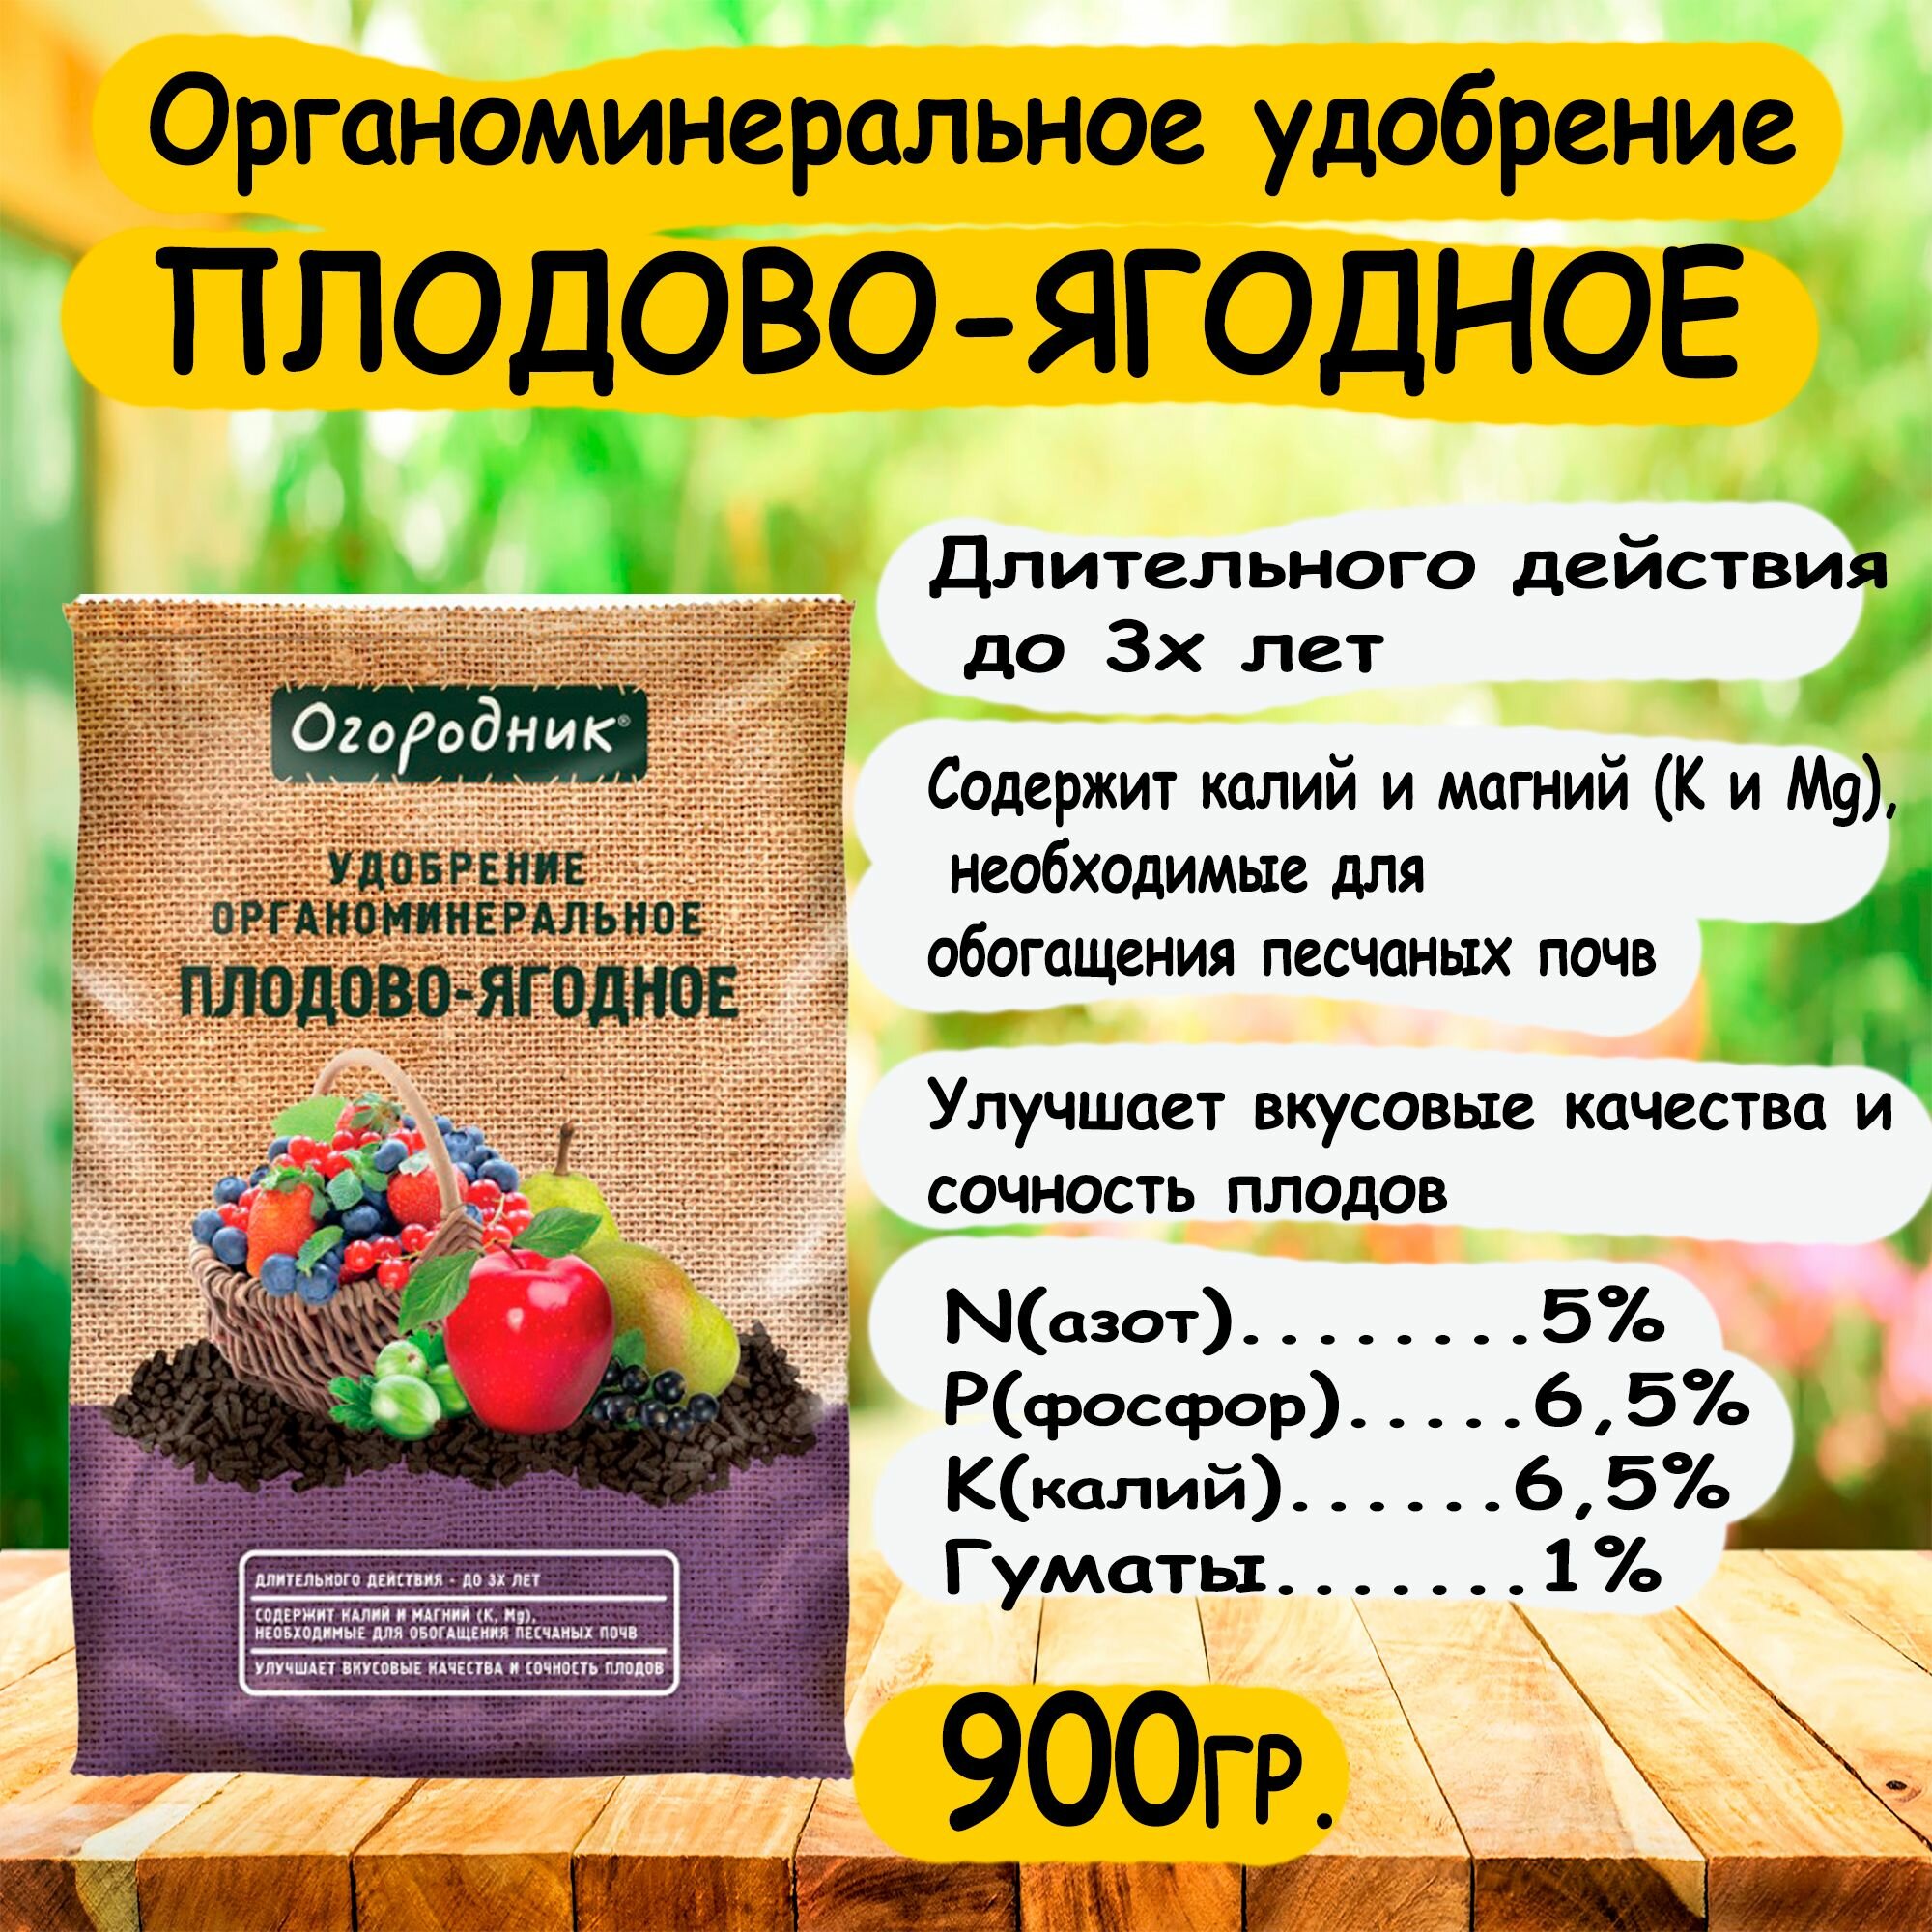 Органоминеральное удобрение плодово-ягодное 'Огородник' 900 гр.